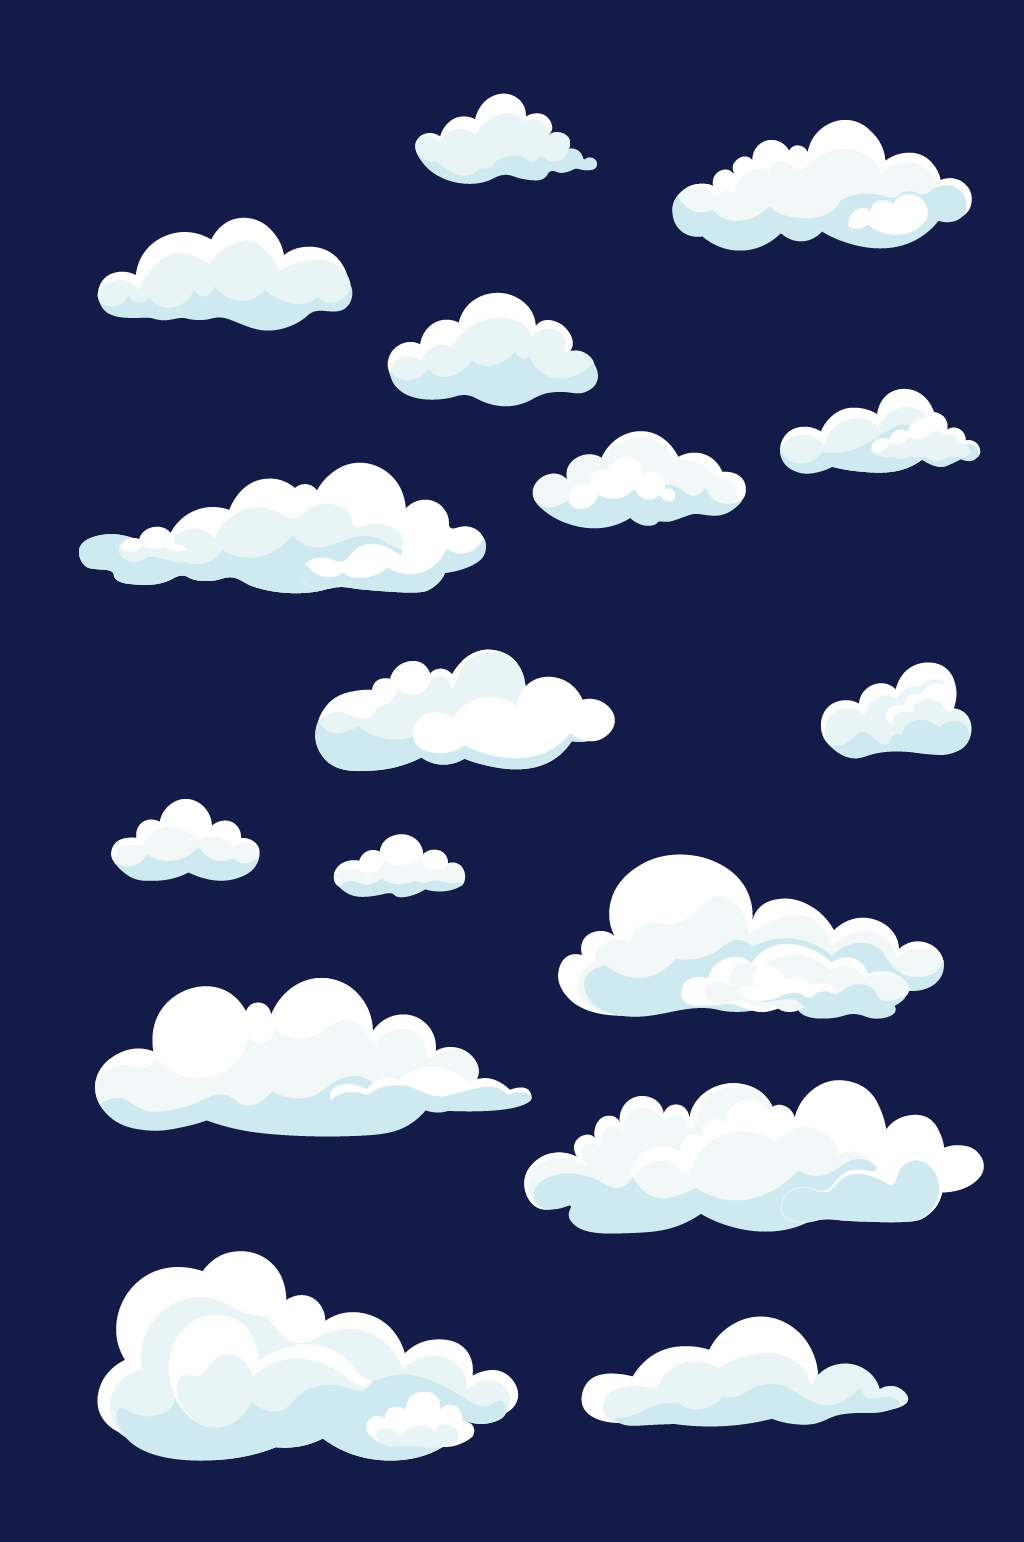 卡通手绘蓝天白云云朵元素素材